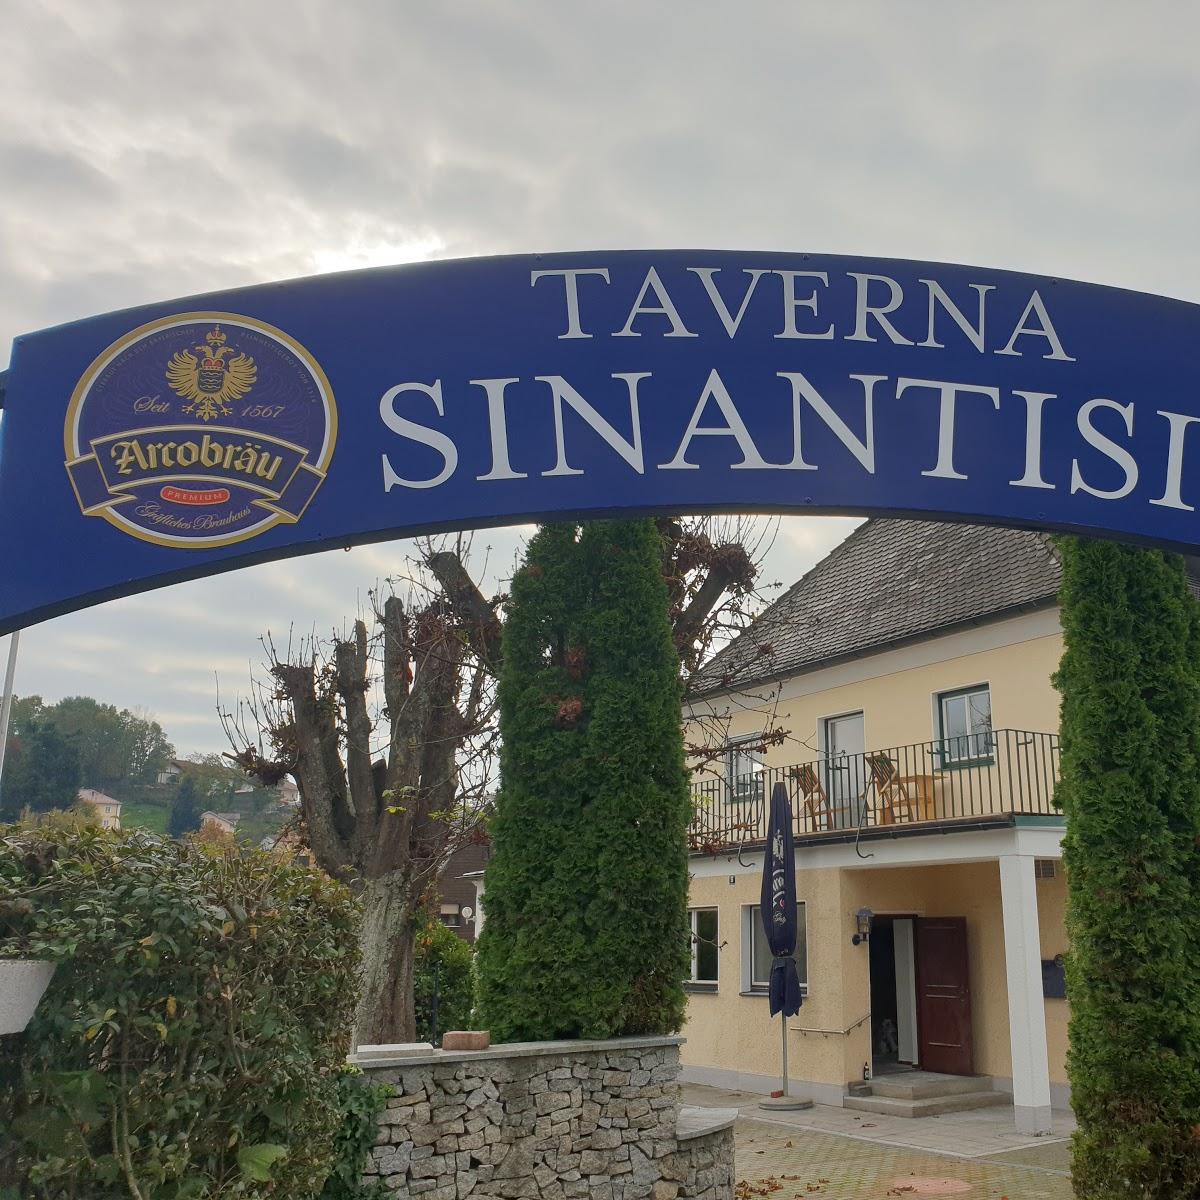 Restaurant "Taverna Sinantisi Griechische Spezialitäten" in  Deggendorf